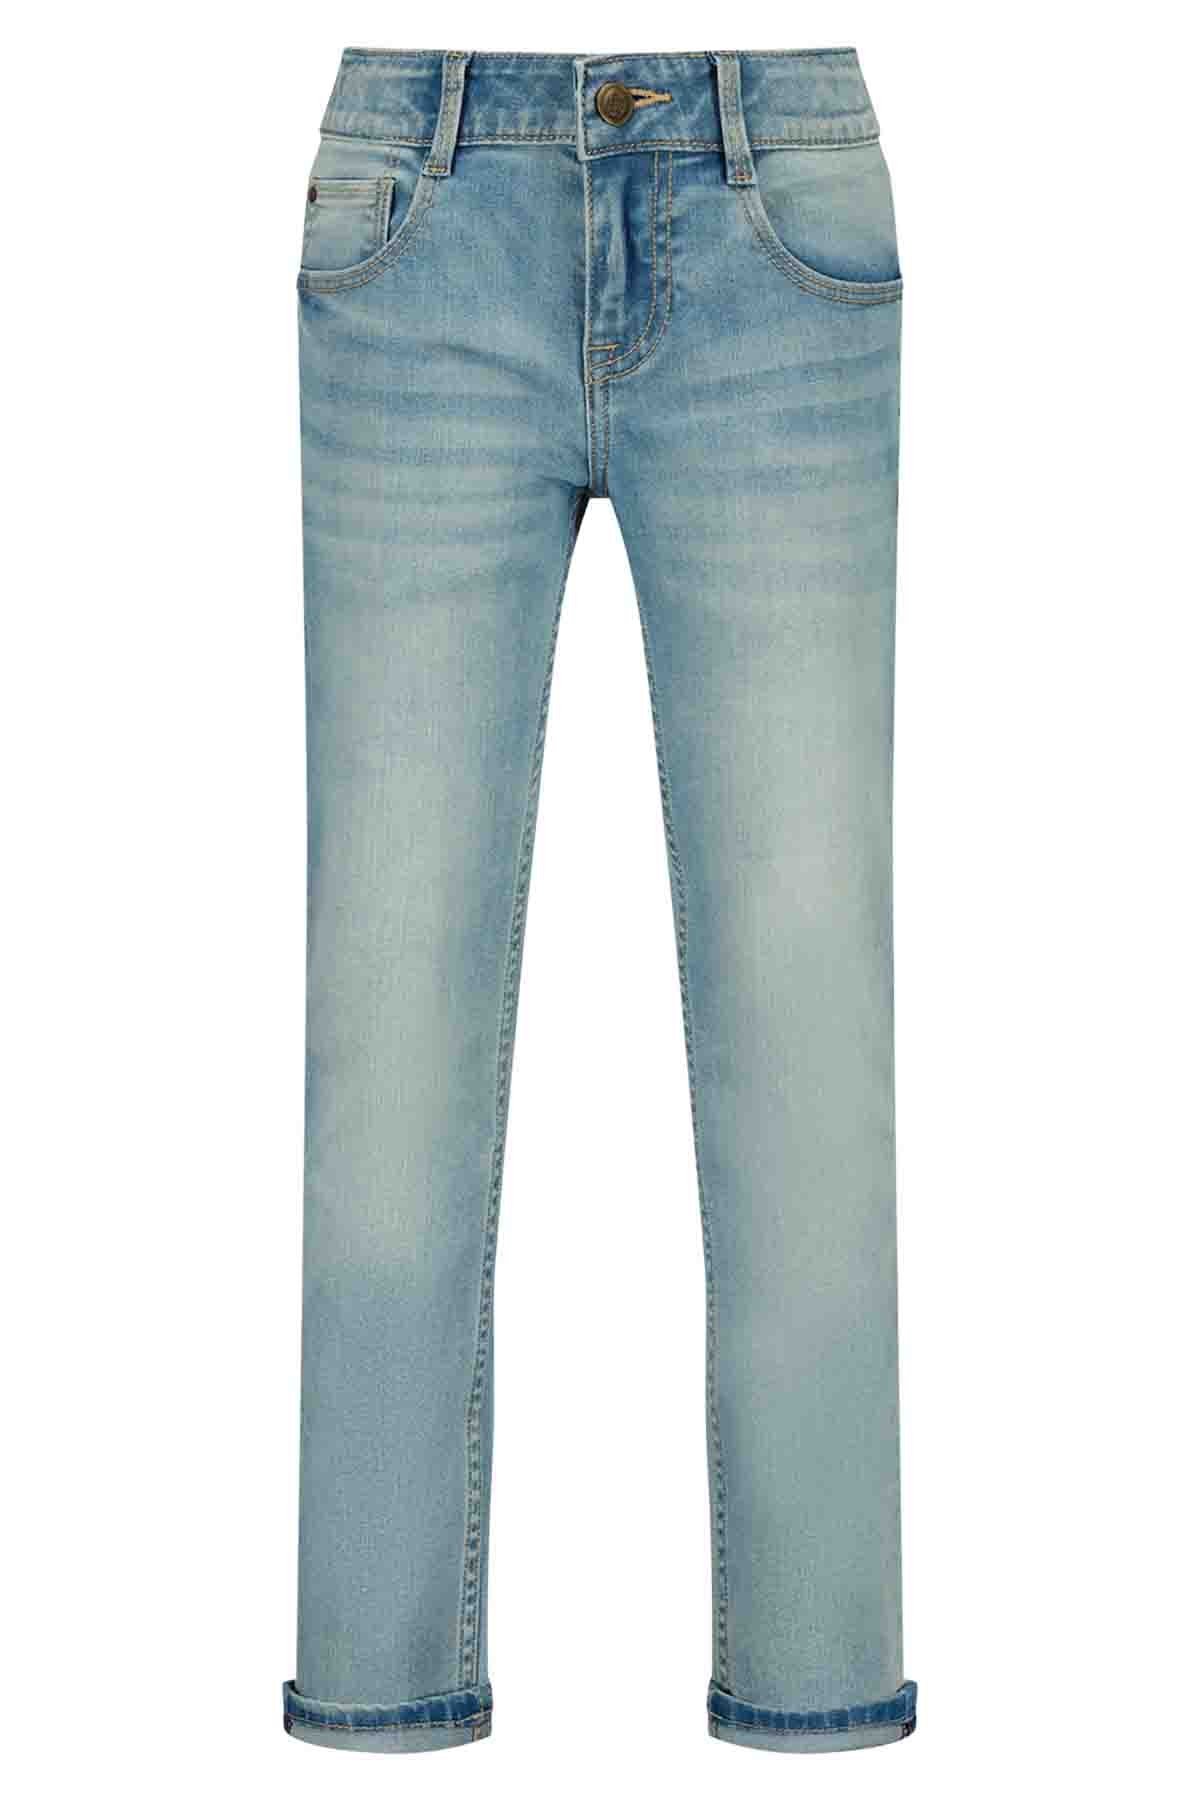 Berlin jeans